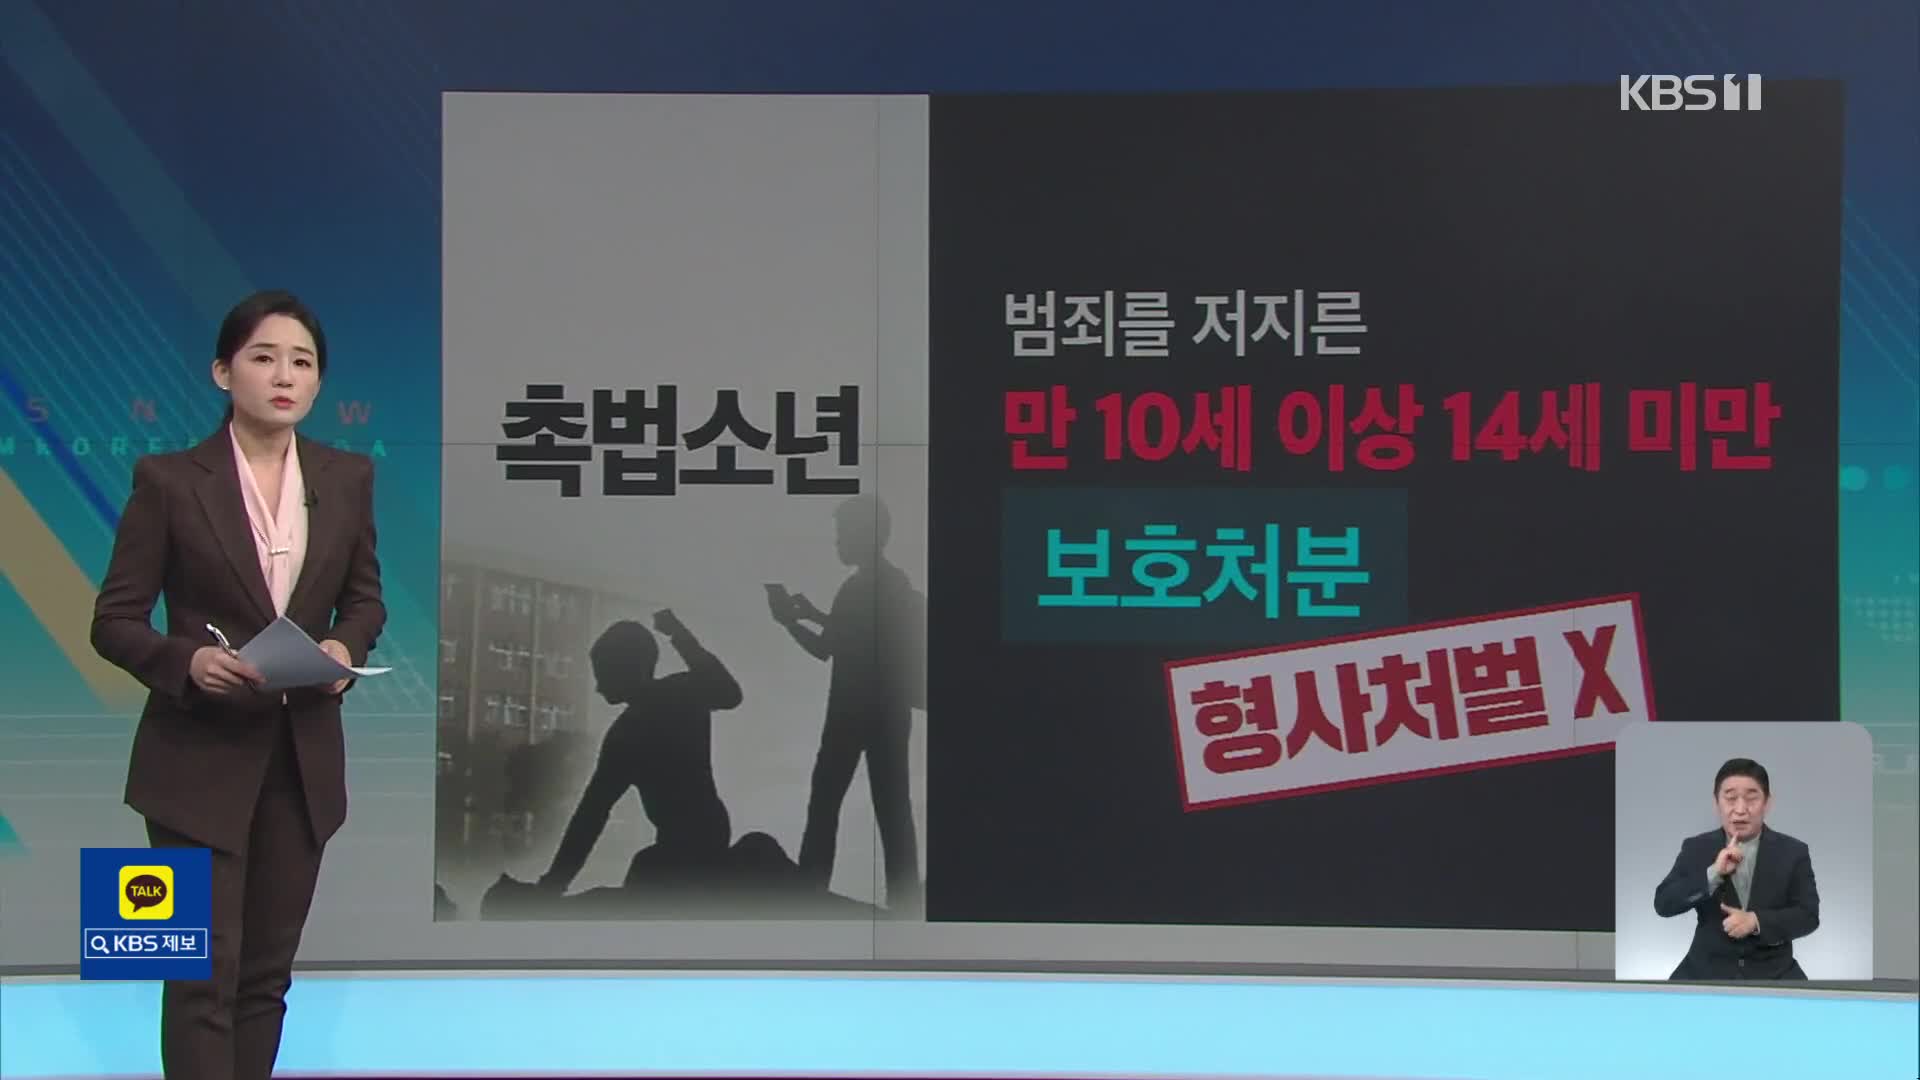 [친절한 뉴스K] “중1도 형사처벌” 촉법소년 1년 하향…인권위 반대